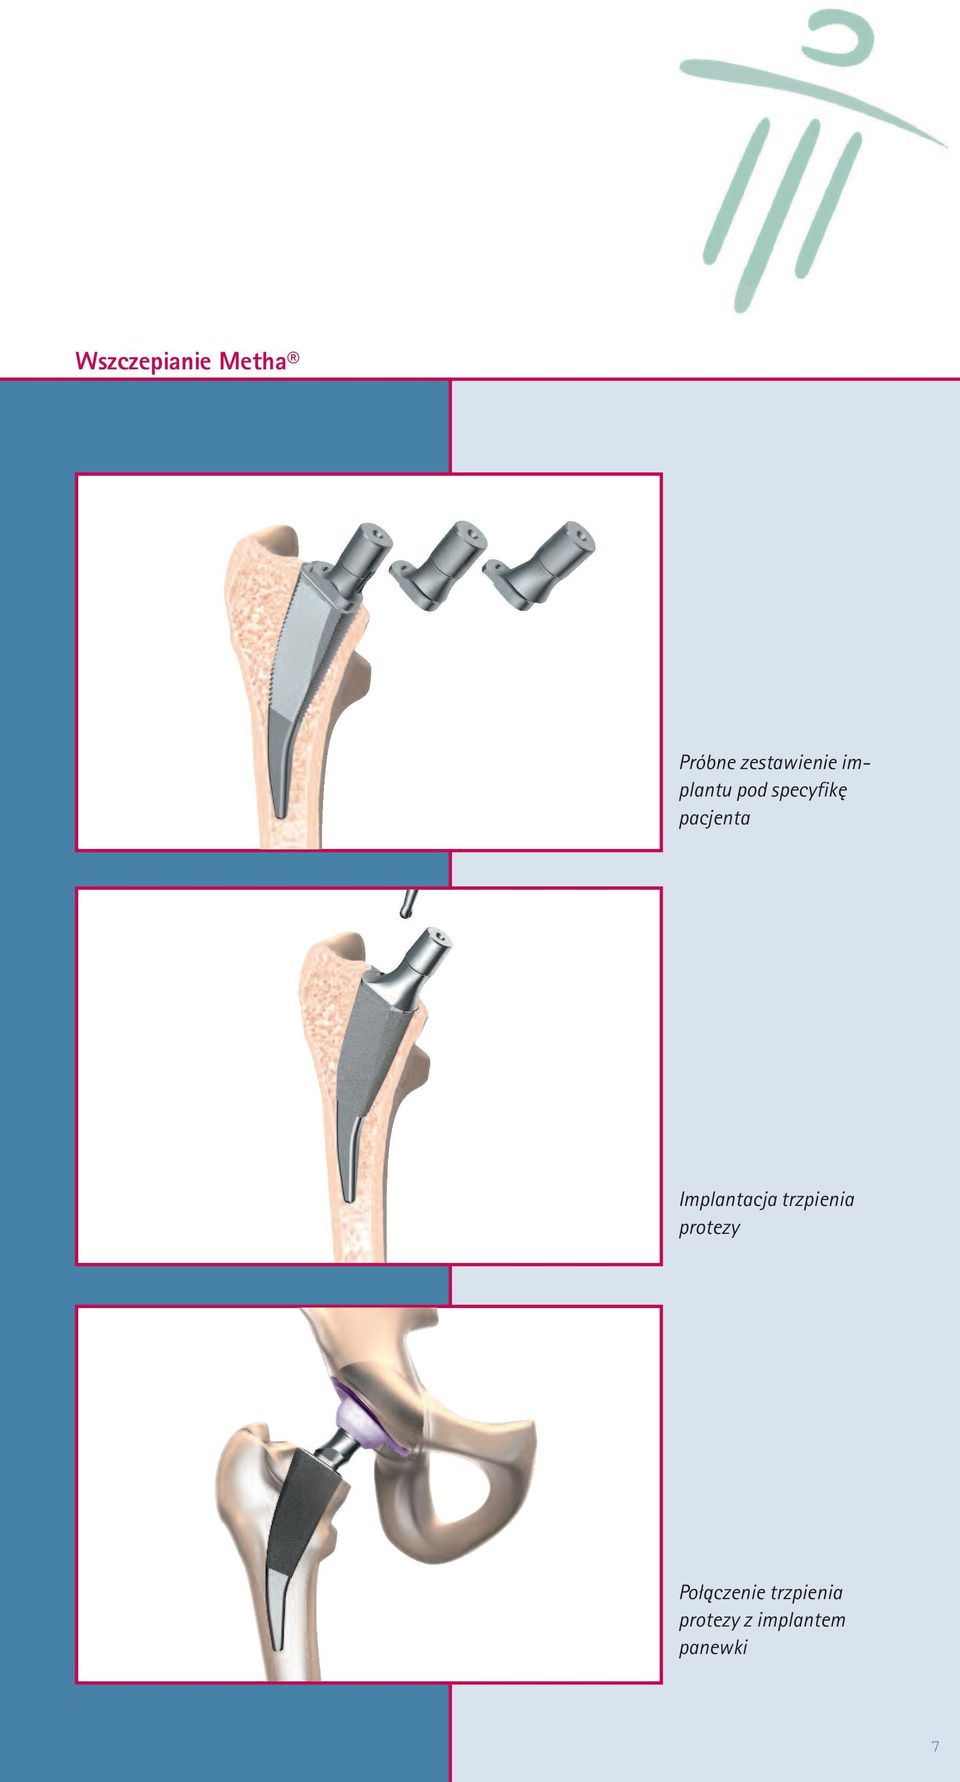 Implantacja trzpienia protezy